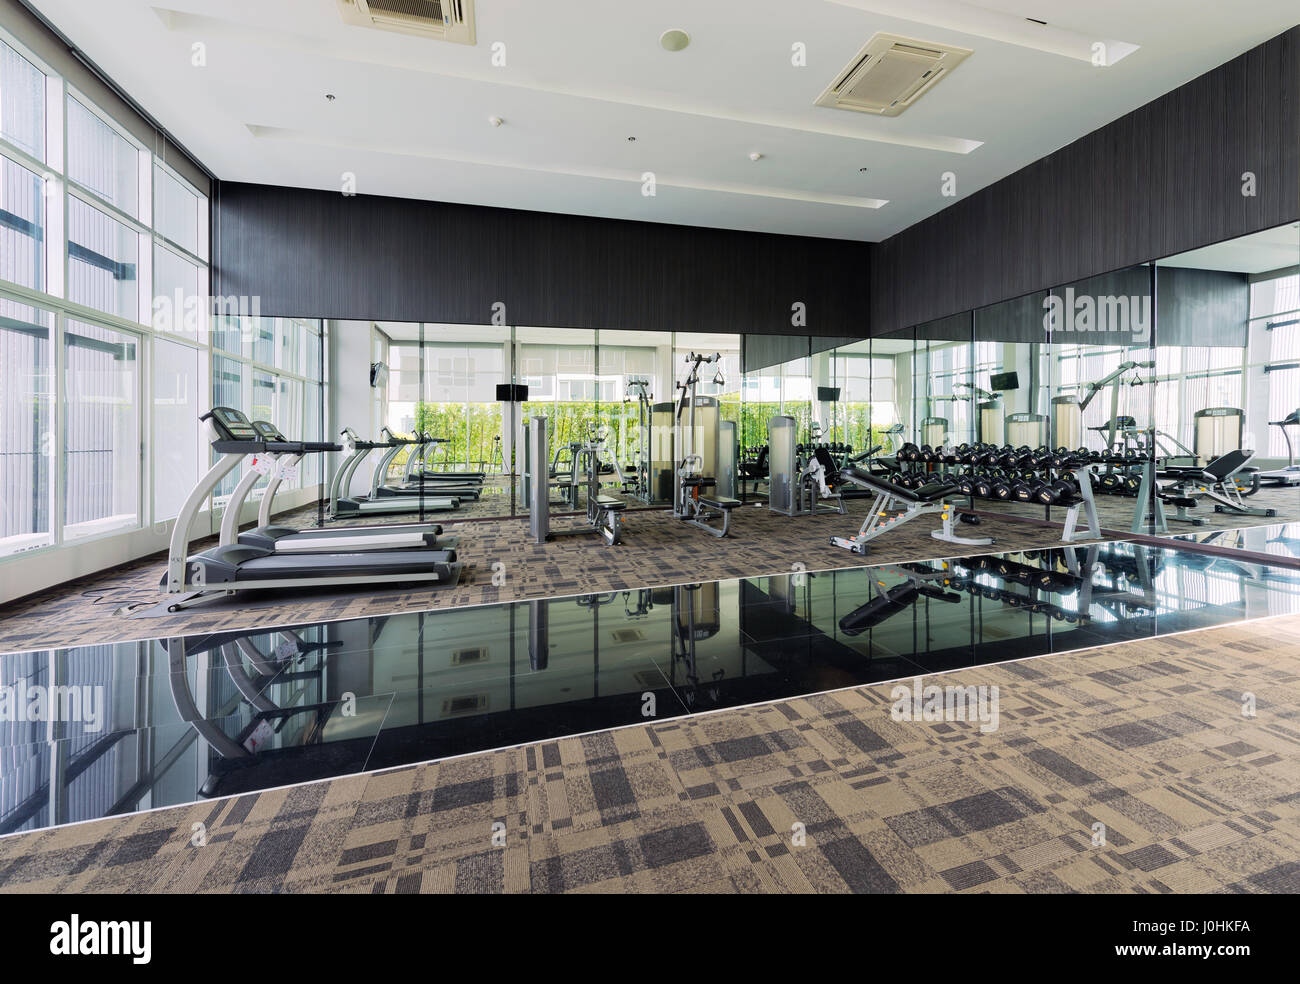 Fitness Center interior design, Gym Stock Photo